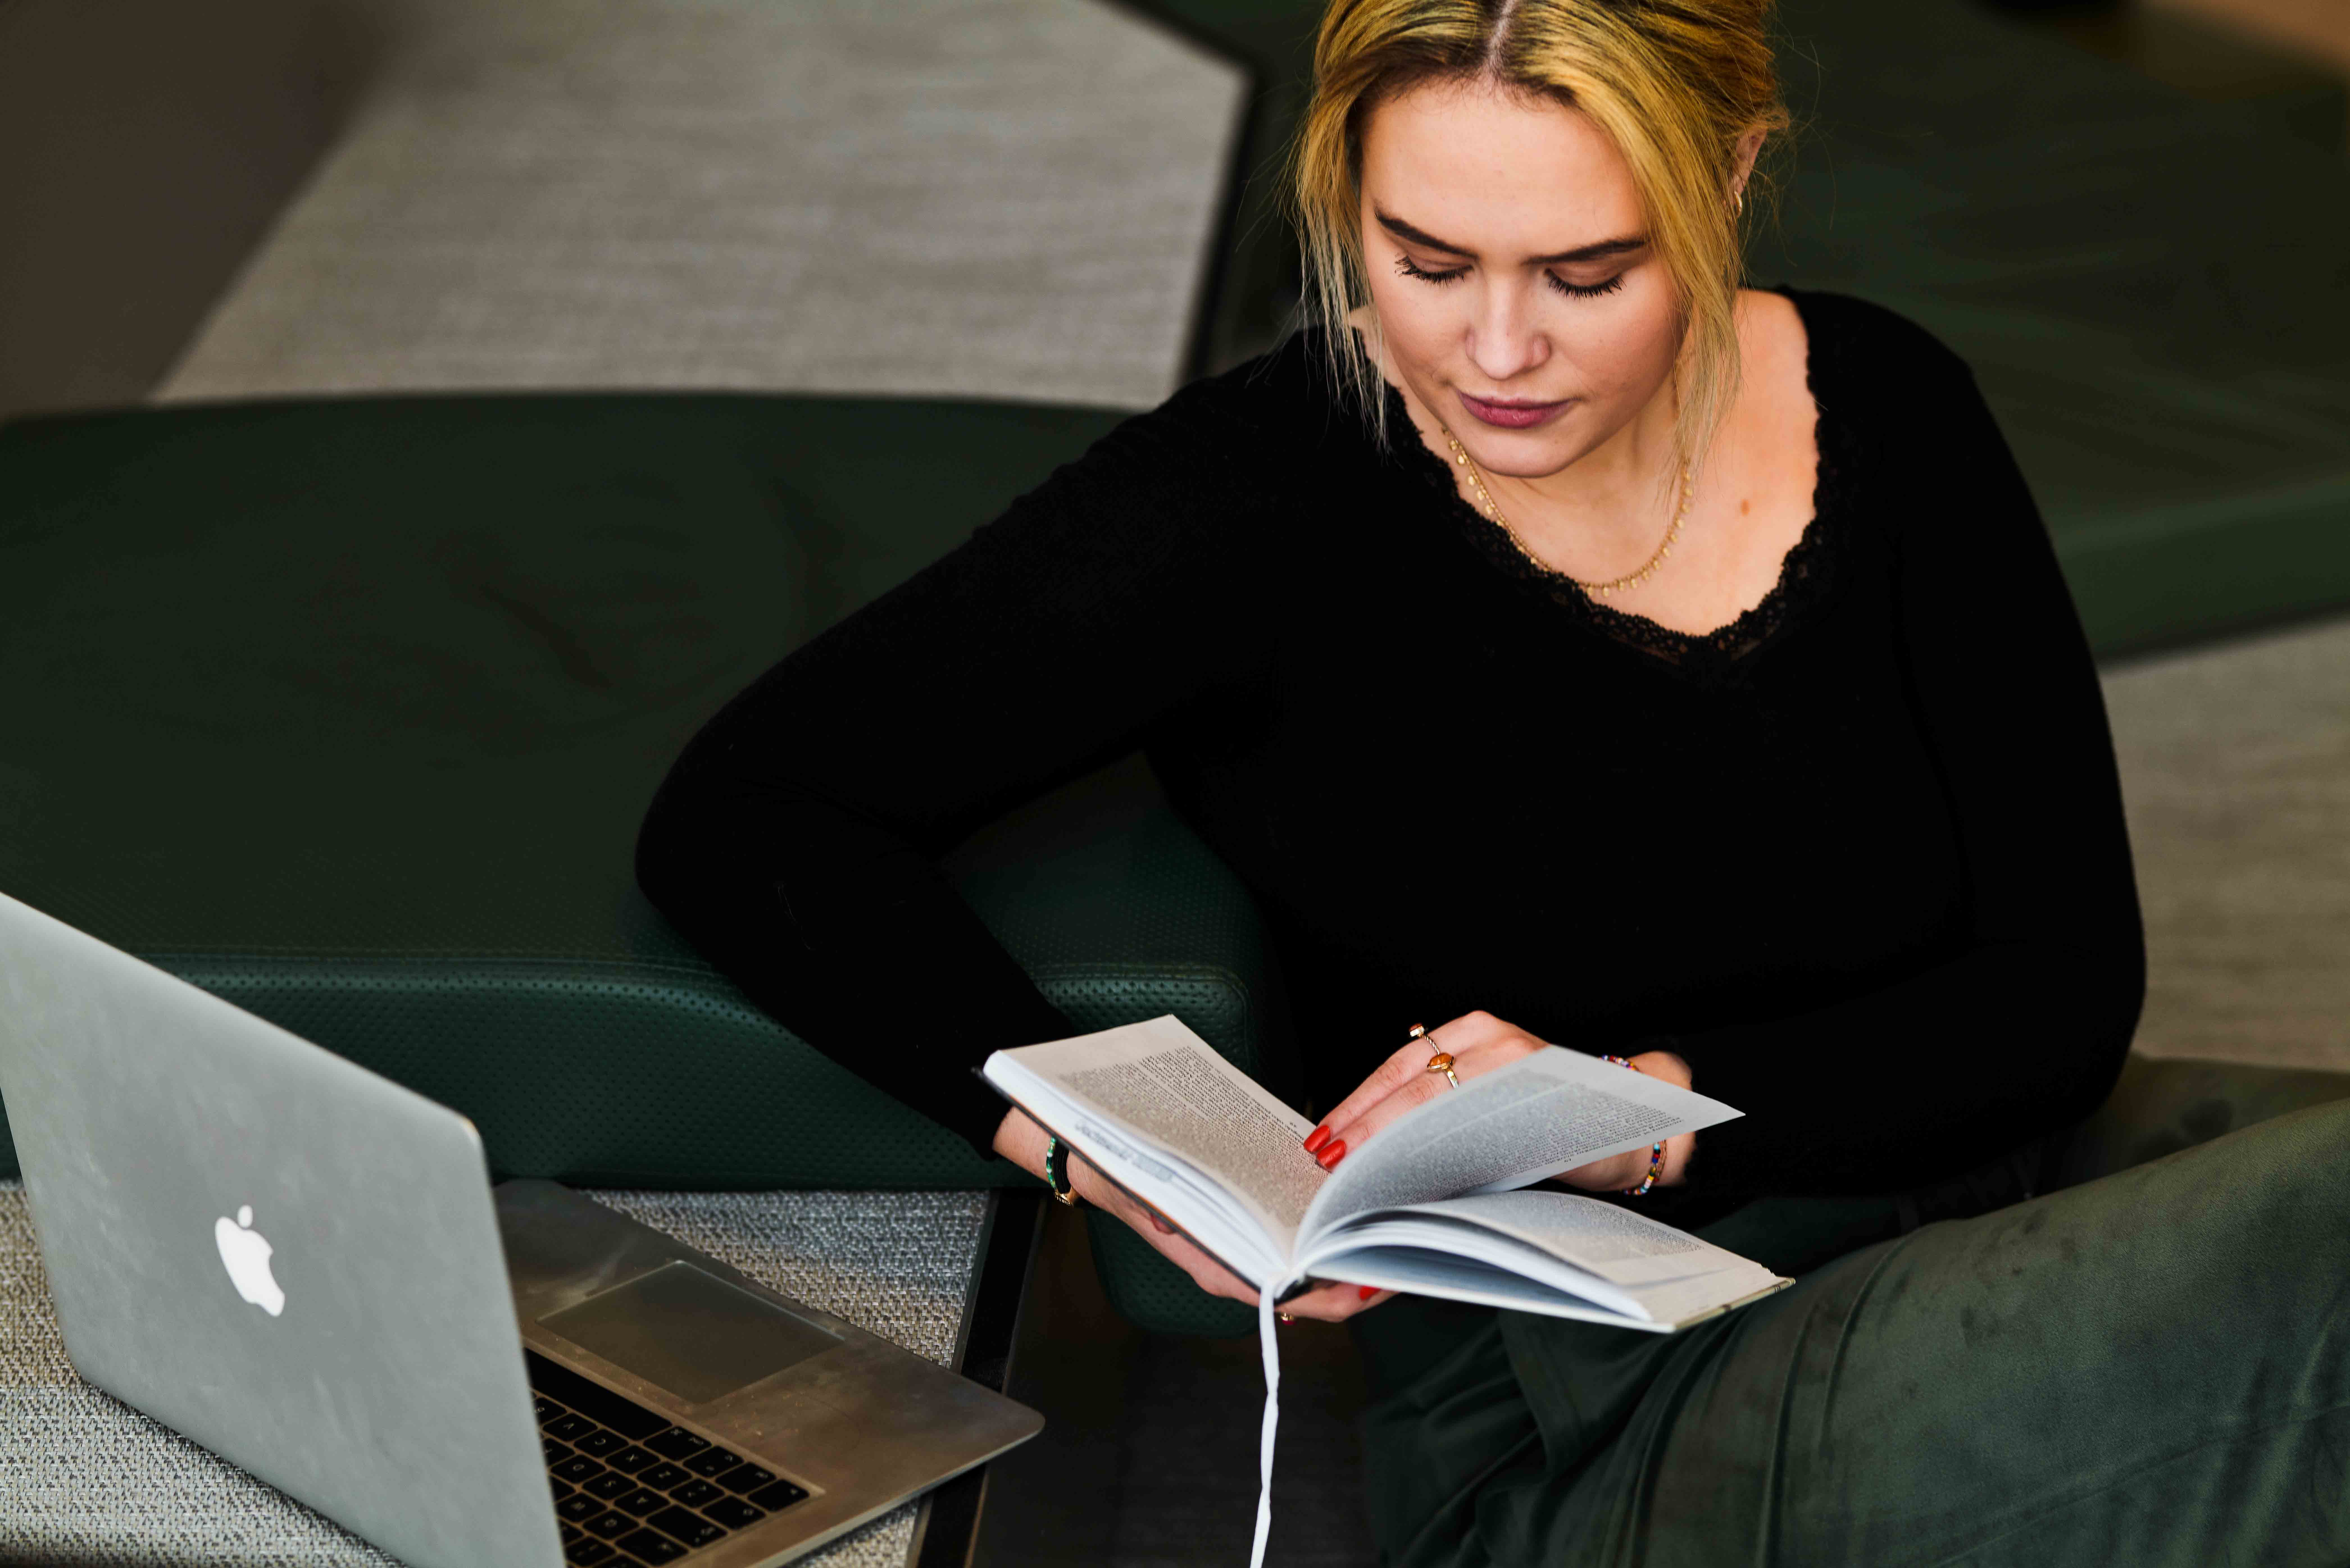 Ung blond kvinne i mørk genser leser bok ved siden av en laptop